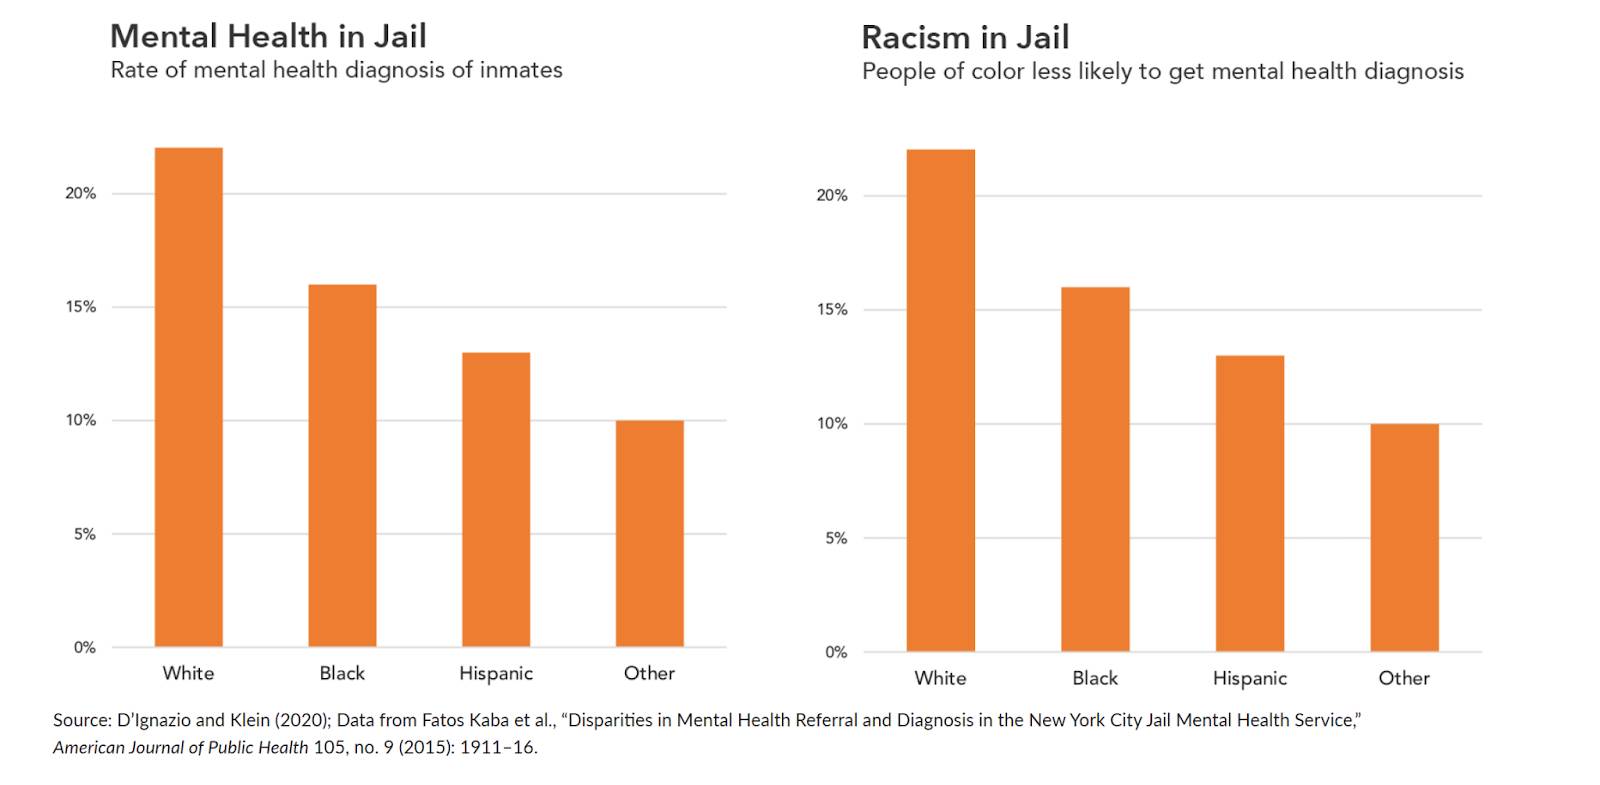 Diagramm mit dem prozentualen Anteil psychischer Erkrankungen bzw. Rassismus im Strafvollzug in absteigender Reihenfolge nach den Kategorien Weiß, Schwarz, Hispanisch und Sonstige